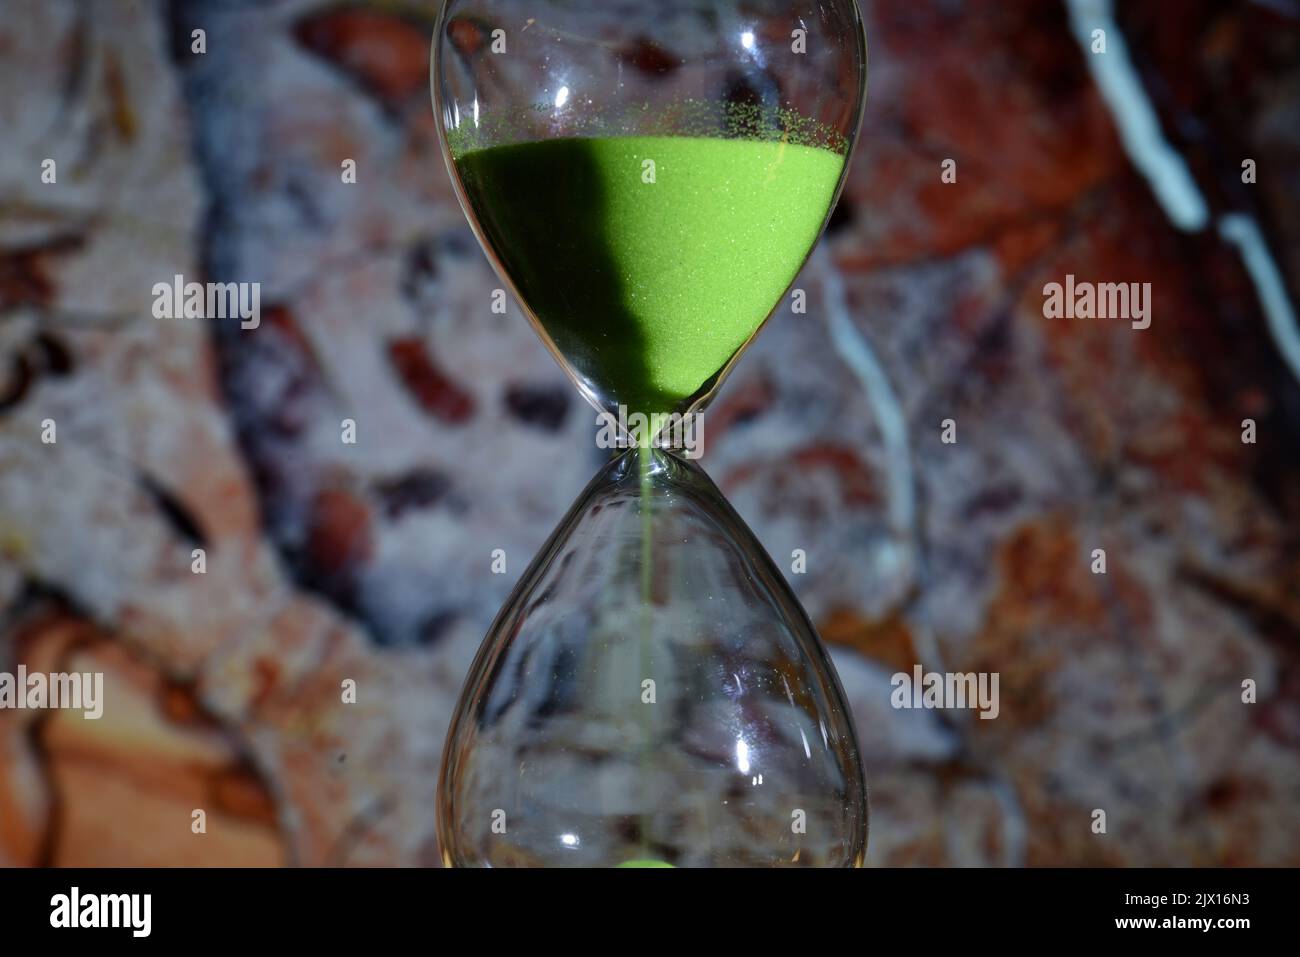 Detalle de un reloj de arena de color verde, contando el tiempo, sobre diferentes fondos Stock Photo